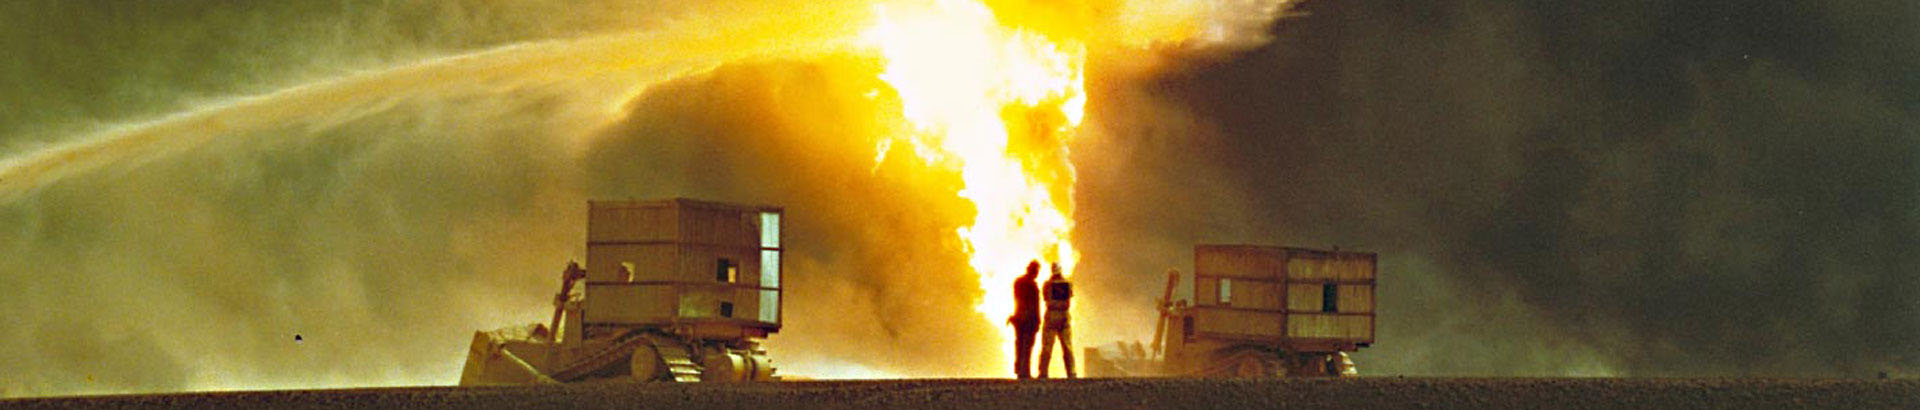 Kuwait Oil Field on fire